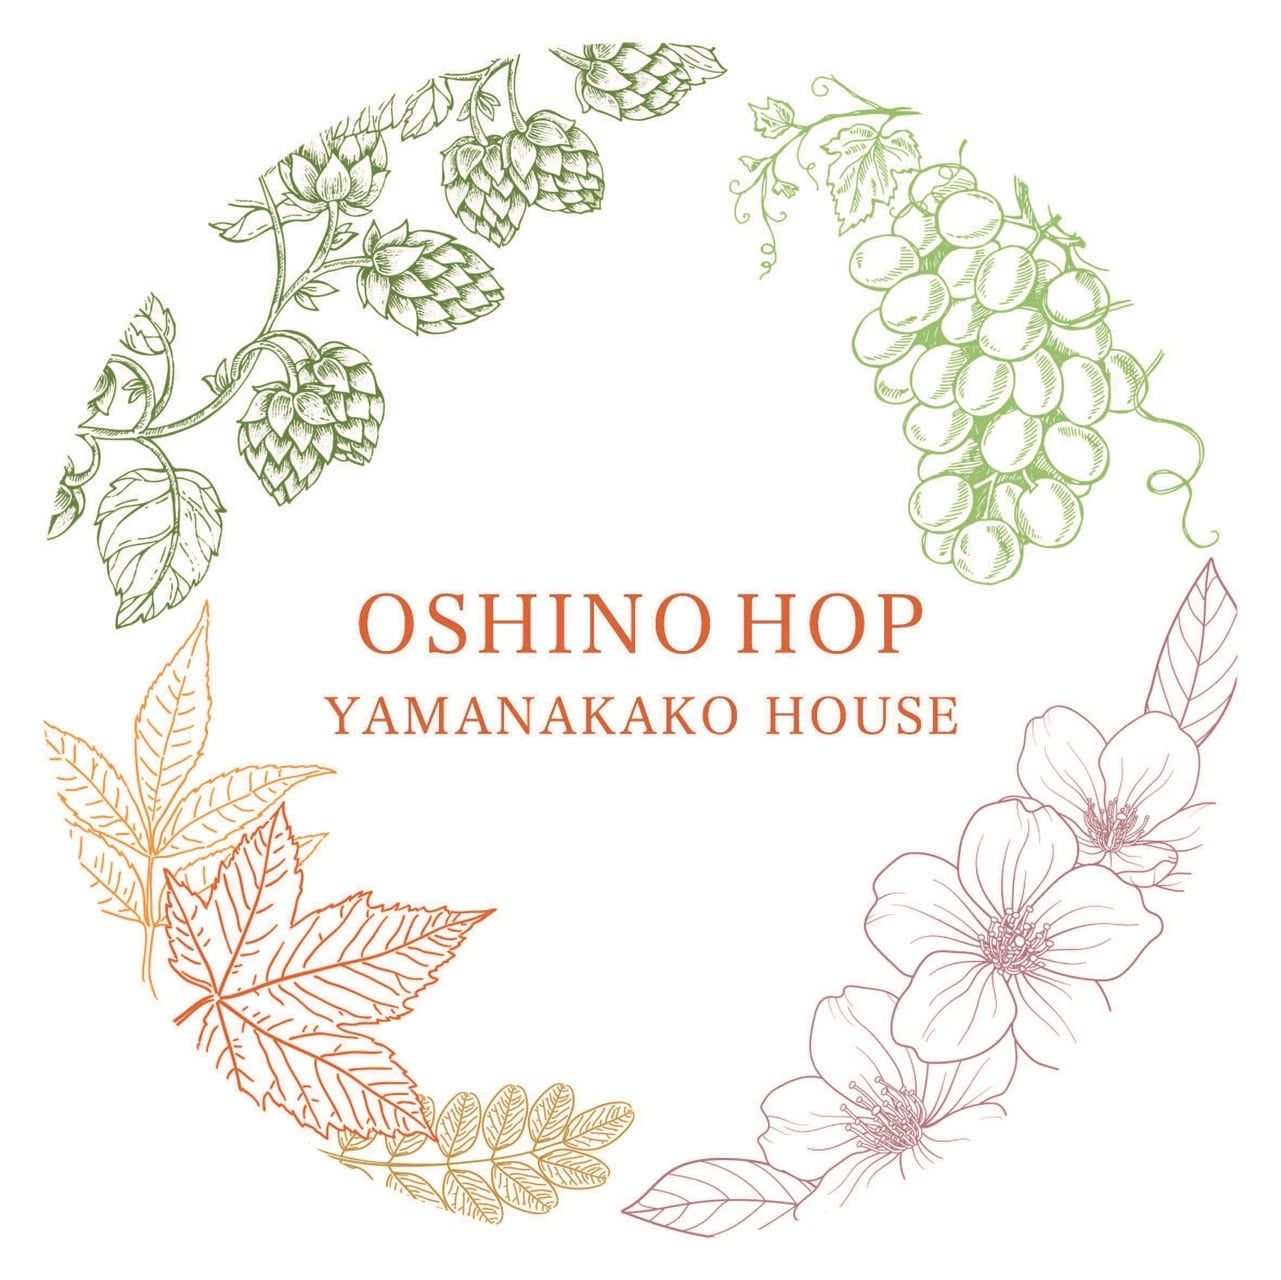 OSHINO HOP